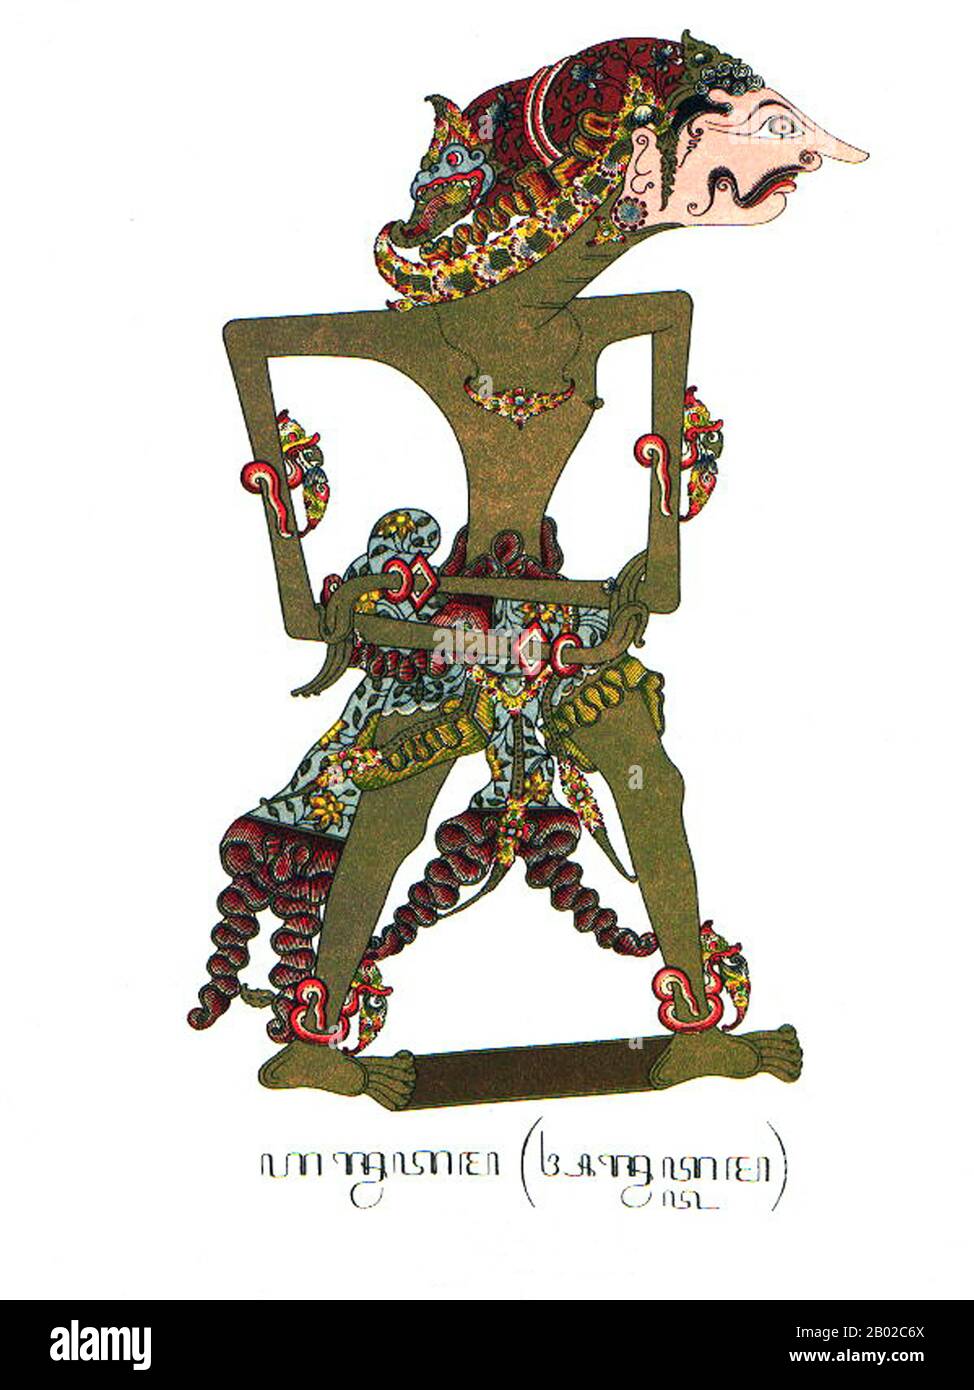 Wayang è una parola giavanese per particolari tipi di teatro (letteralmente "ombra"). Quando il termine è usato per riferirsi a generi di teatro di burattini, a volte il burattinaio stesso è indicato come wayang. Gli spettacoli del teatro delle marionette ombra sono accompagnati dal gamelan in Java. L'UNESCO ha designato Wayang Kulit, un teatro di marionette ombra e il più conosciuto del wayang indonesiano, Come Un Capolavoro del patrimonio orale e Immateriale Dell'Umanità il 7 novembre 2003. Foto Stock